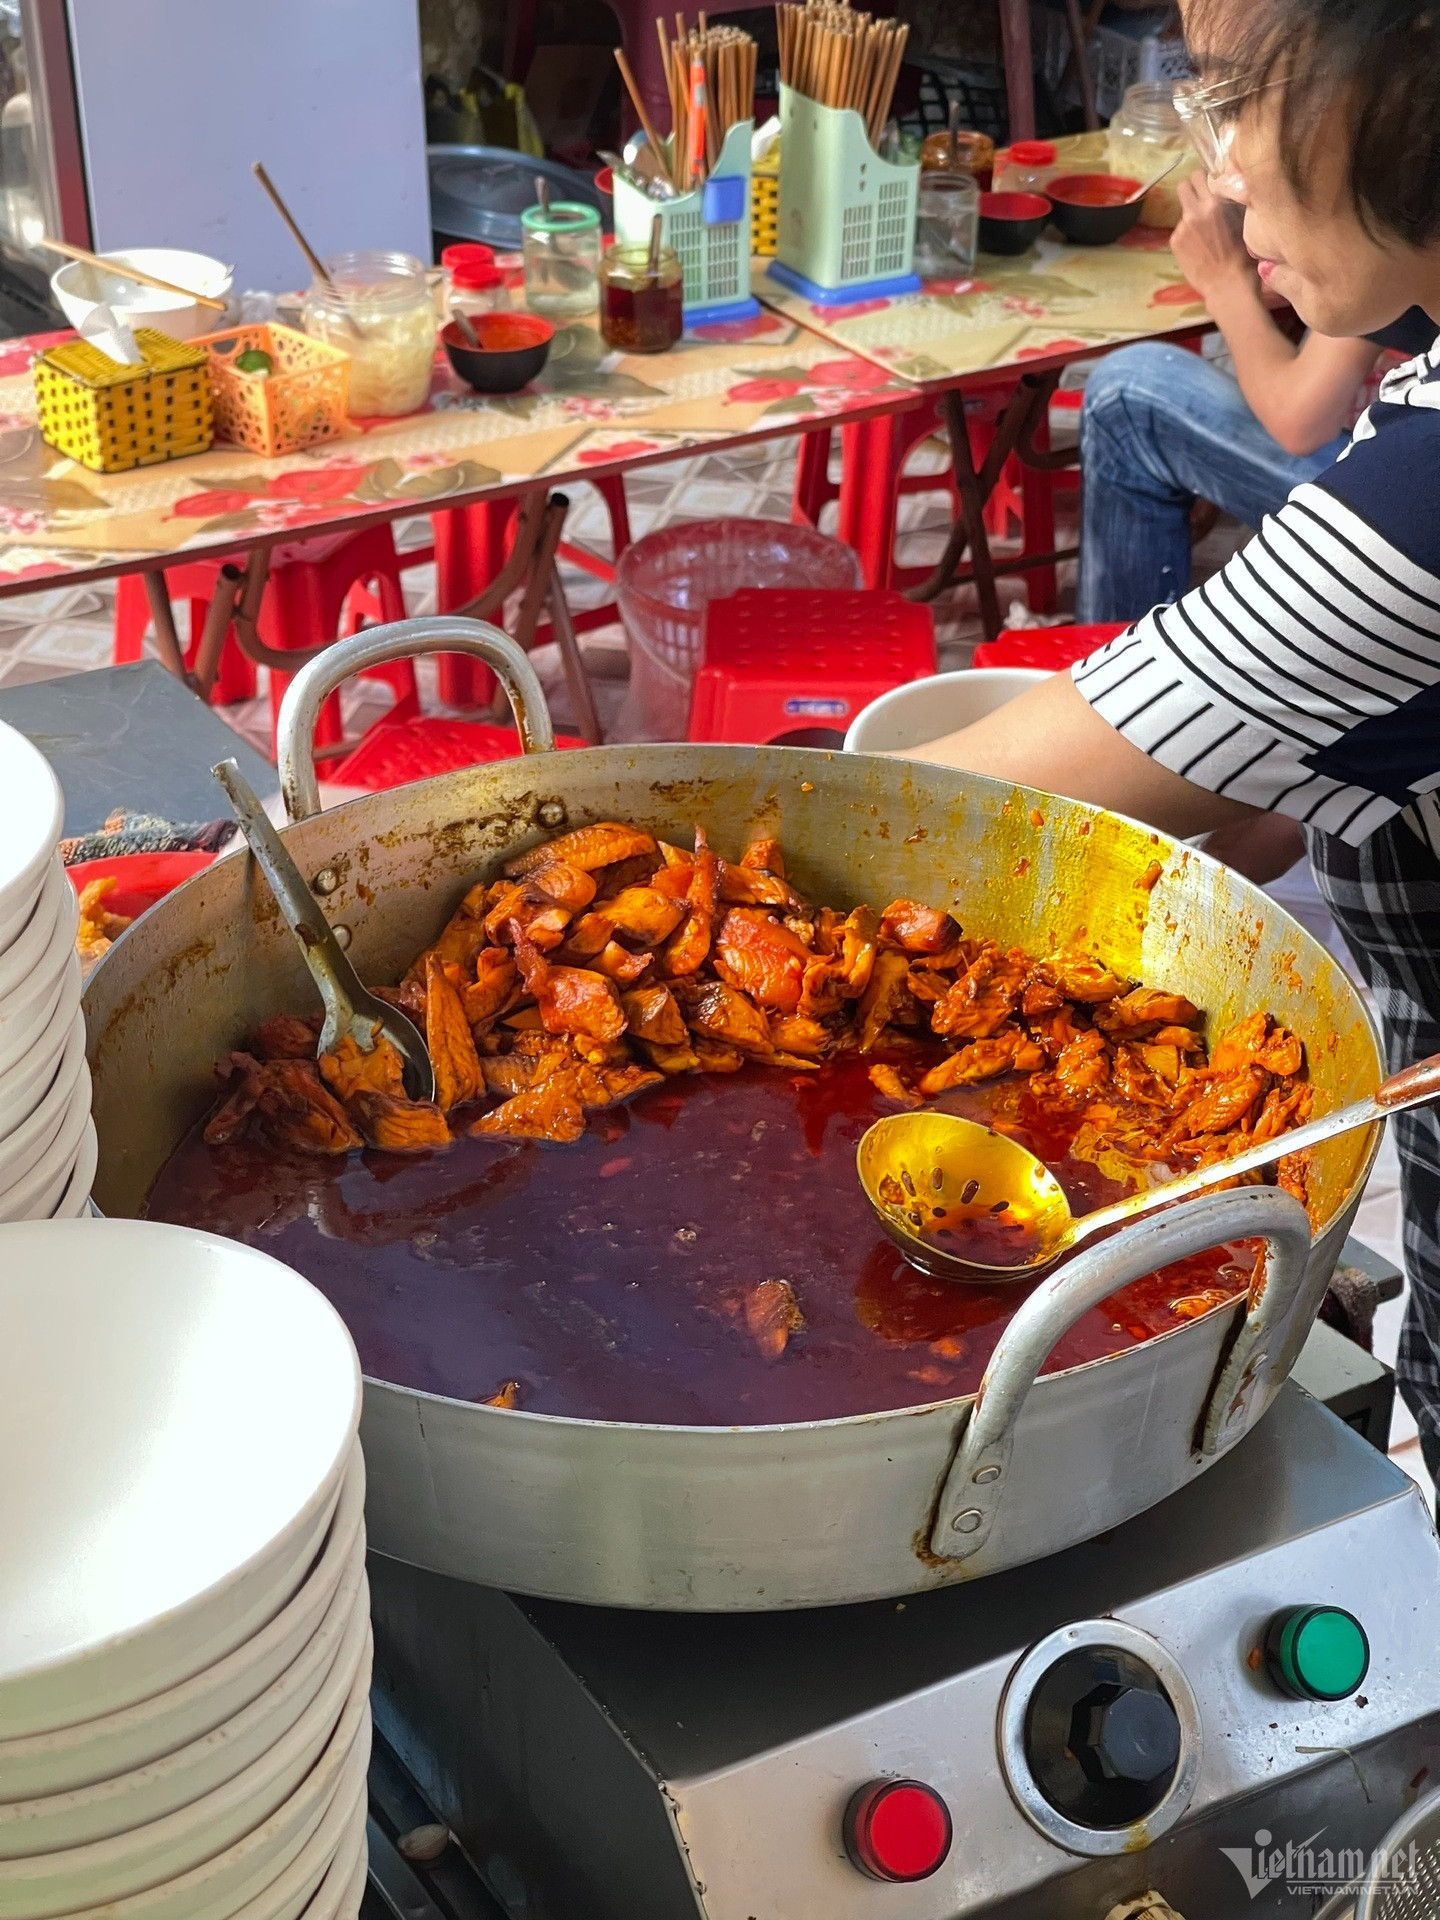 View - Quán bún cá Thái Bình ngày bán 1000 bát, nằm sâu trong ngõ nhỏ khách vẫn tìm ăn